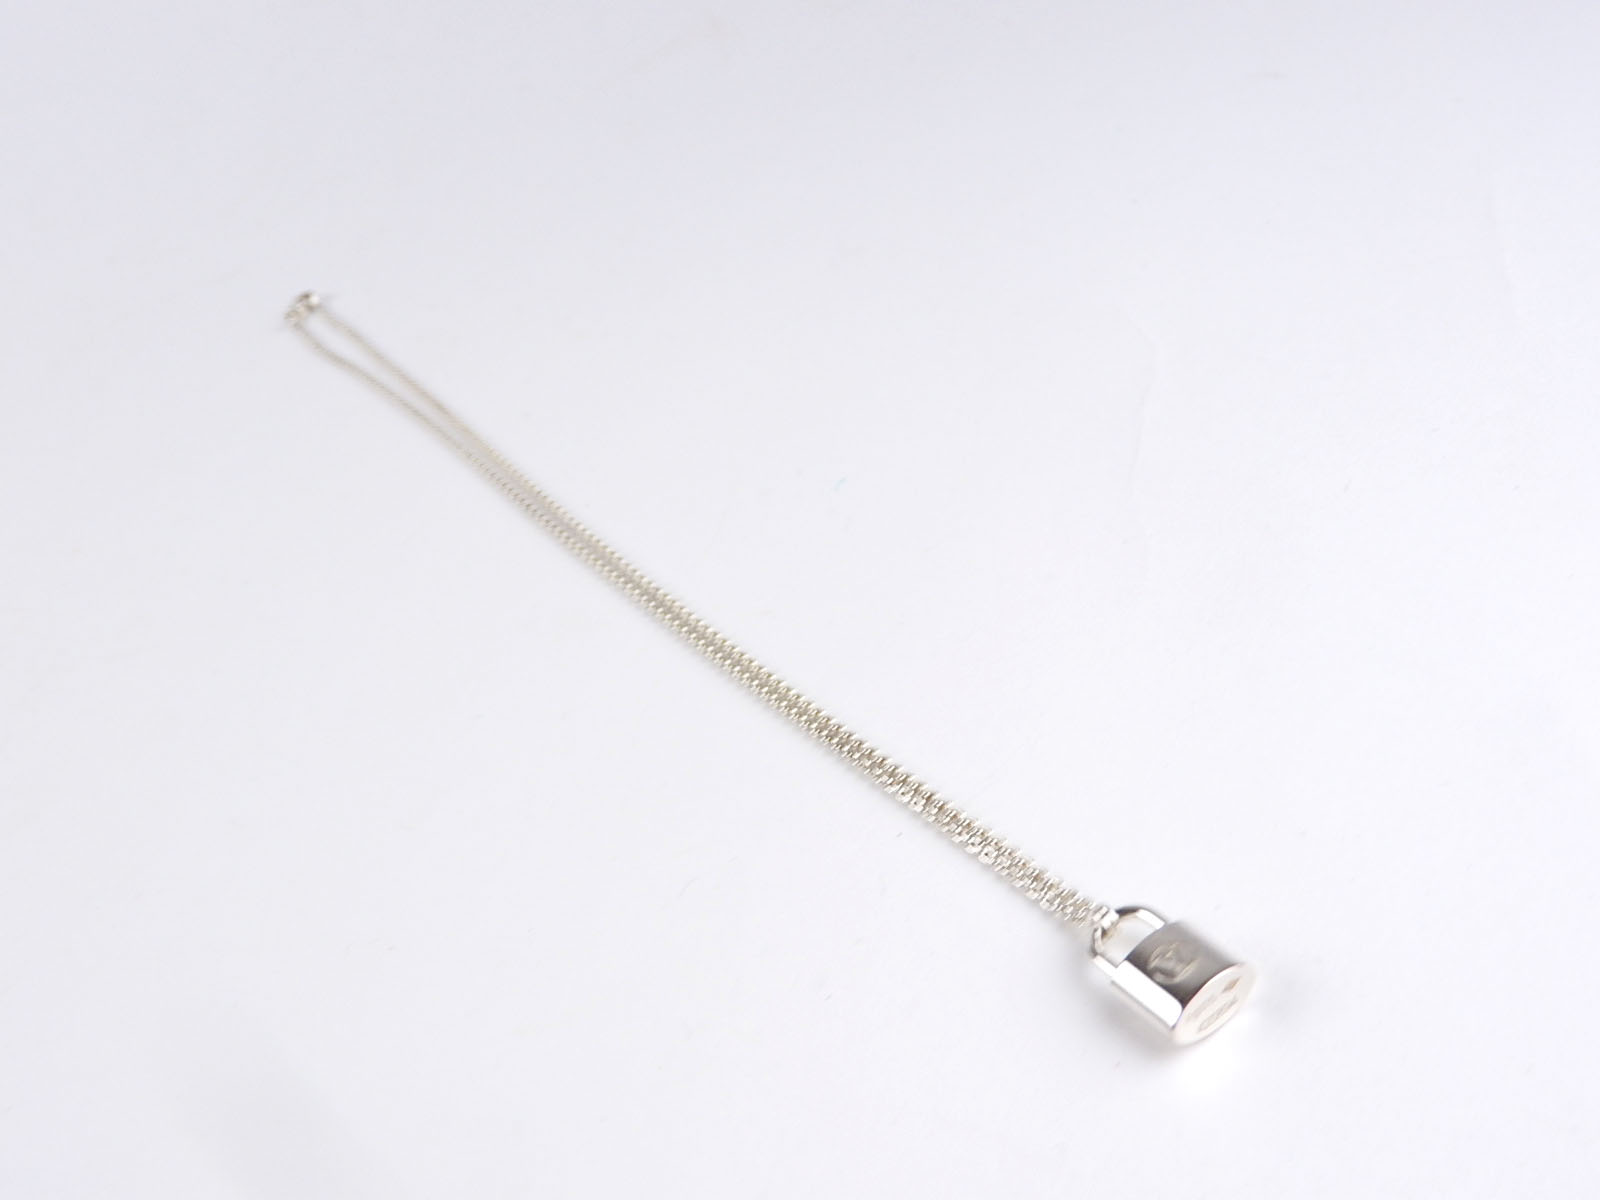 Auth LOUIS VUITTON Pendentif Lockit Pendant Necklace Silver AG925 Q93559 V-2754 | eBay